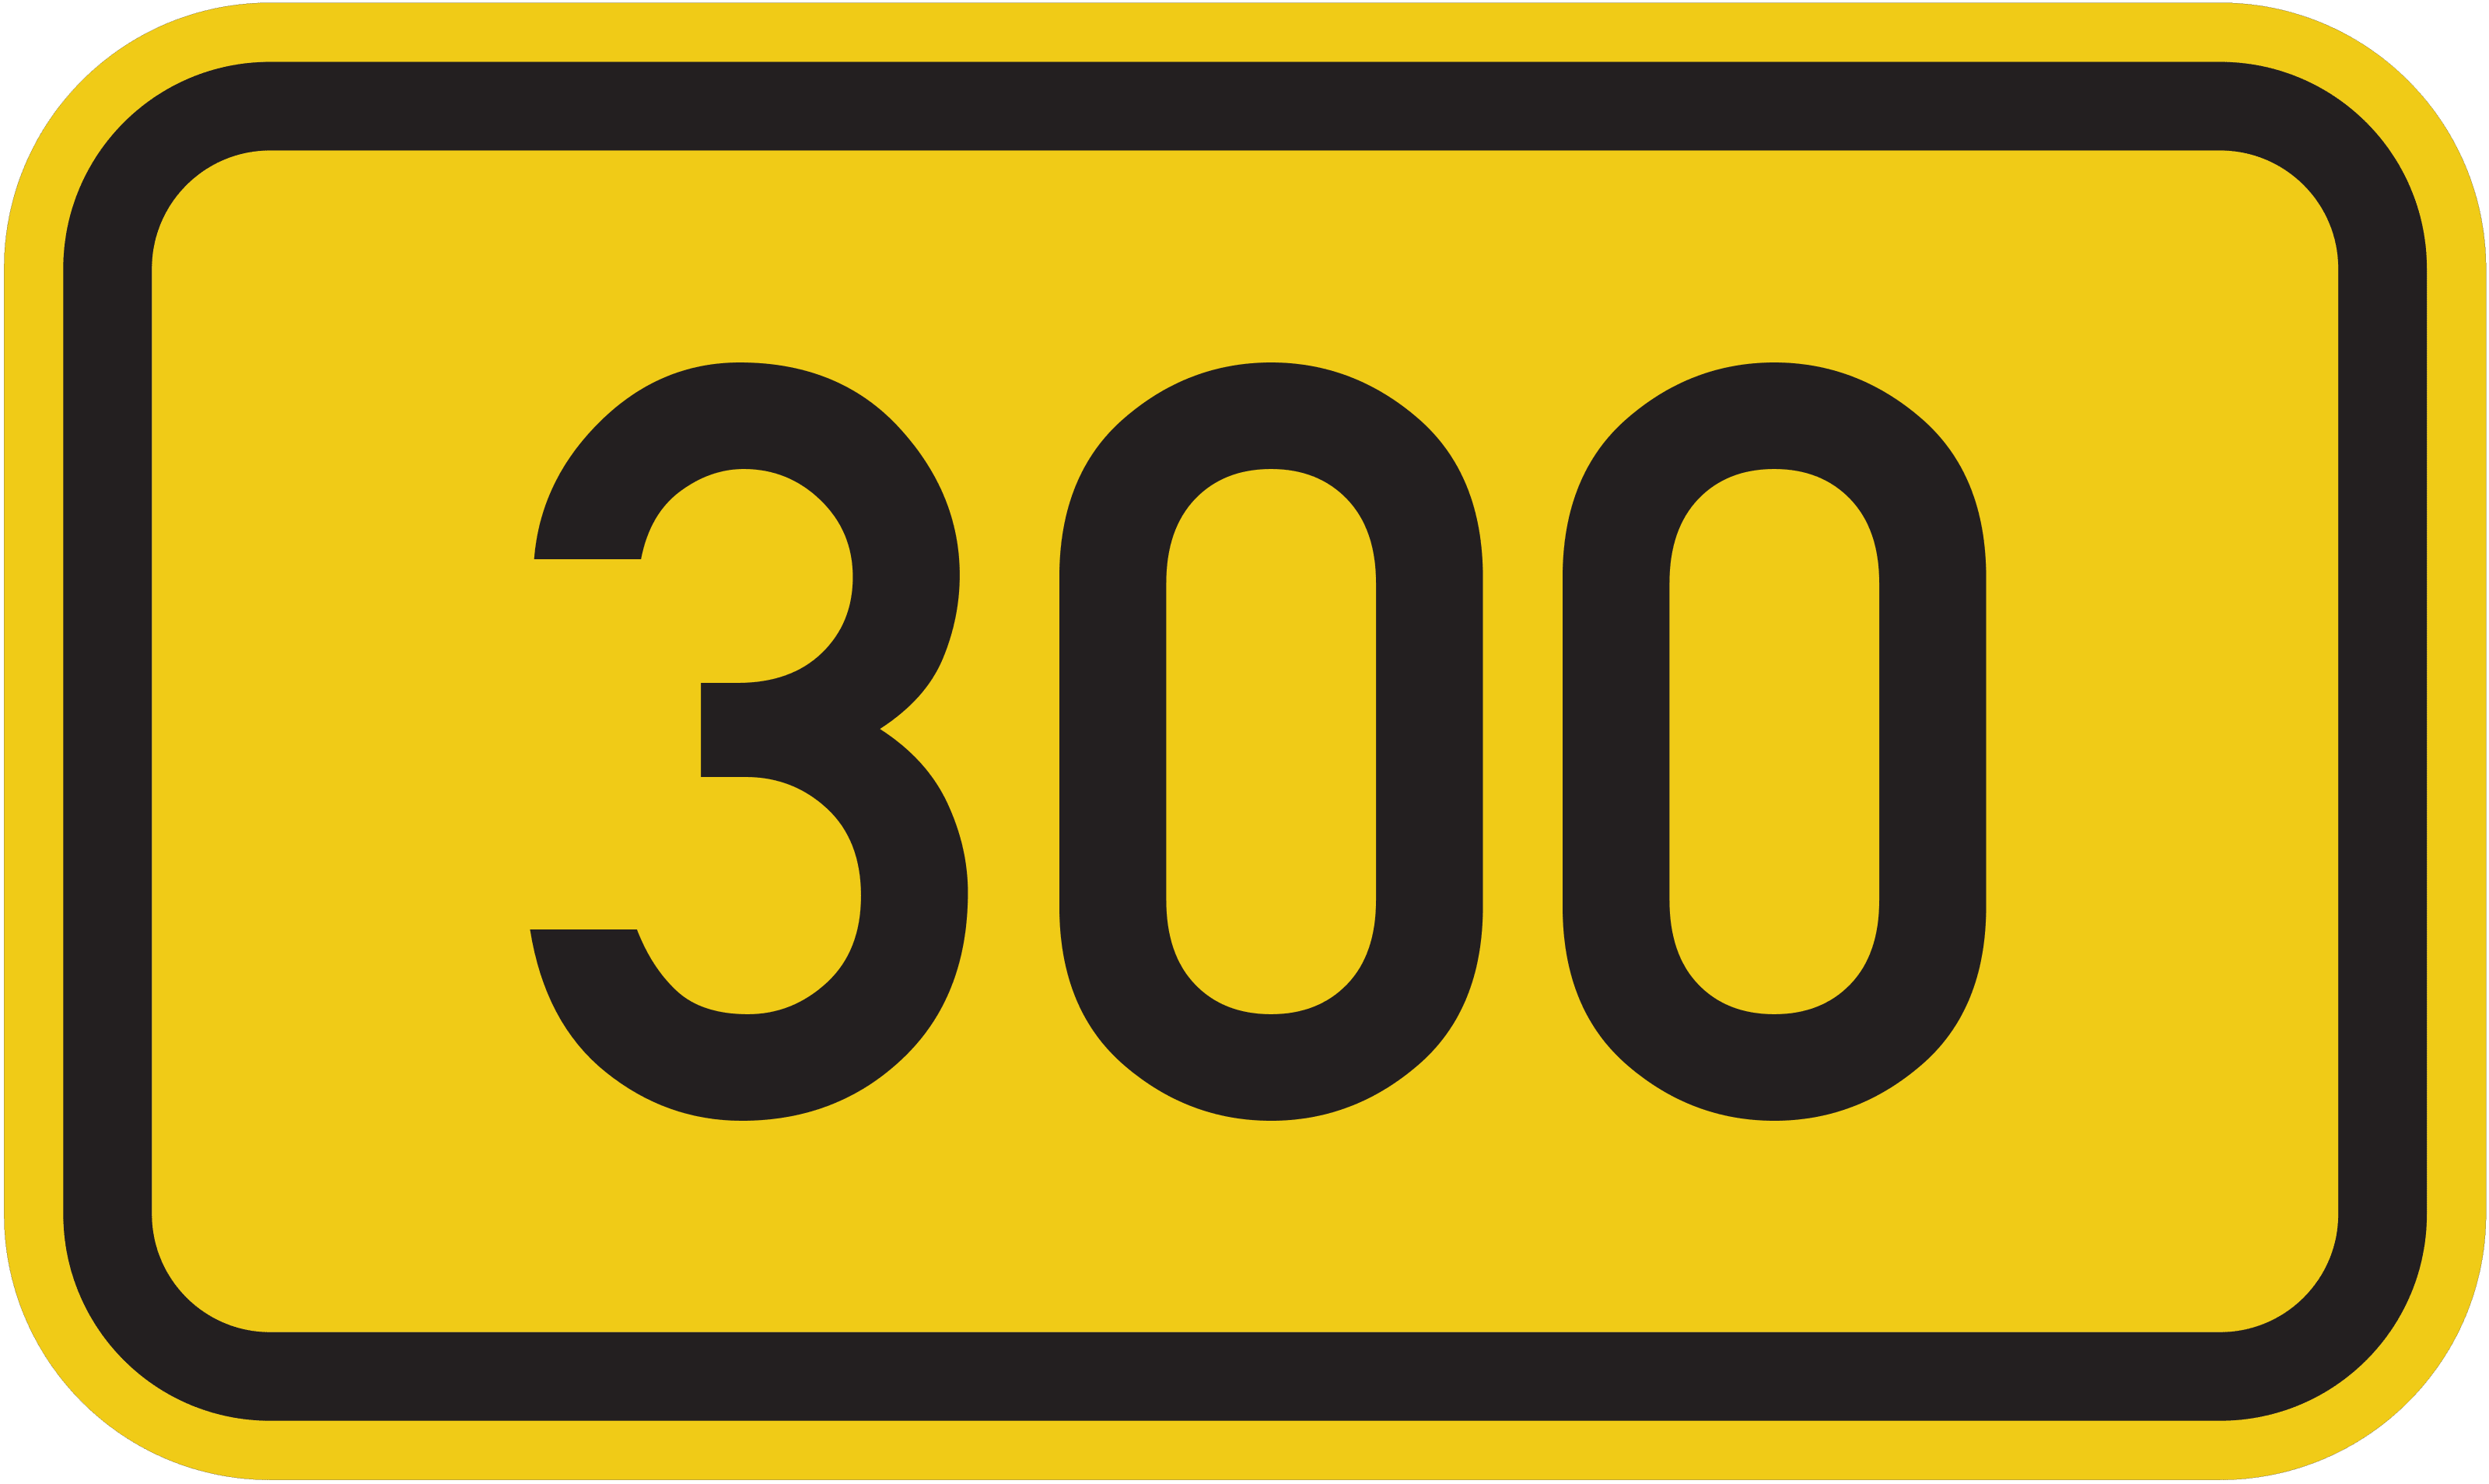 Bundesstraße 300